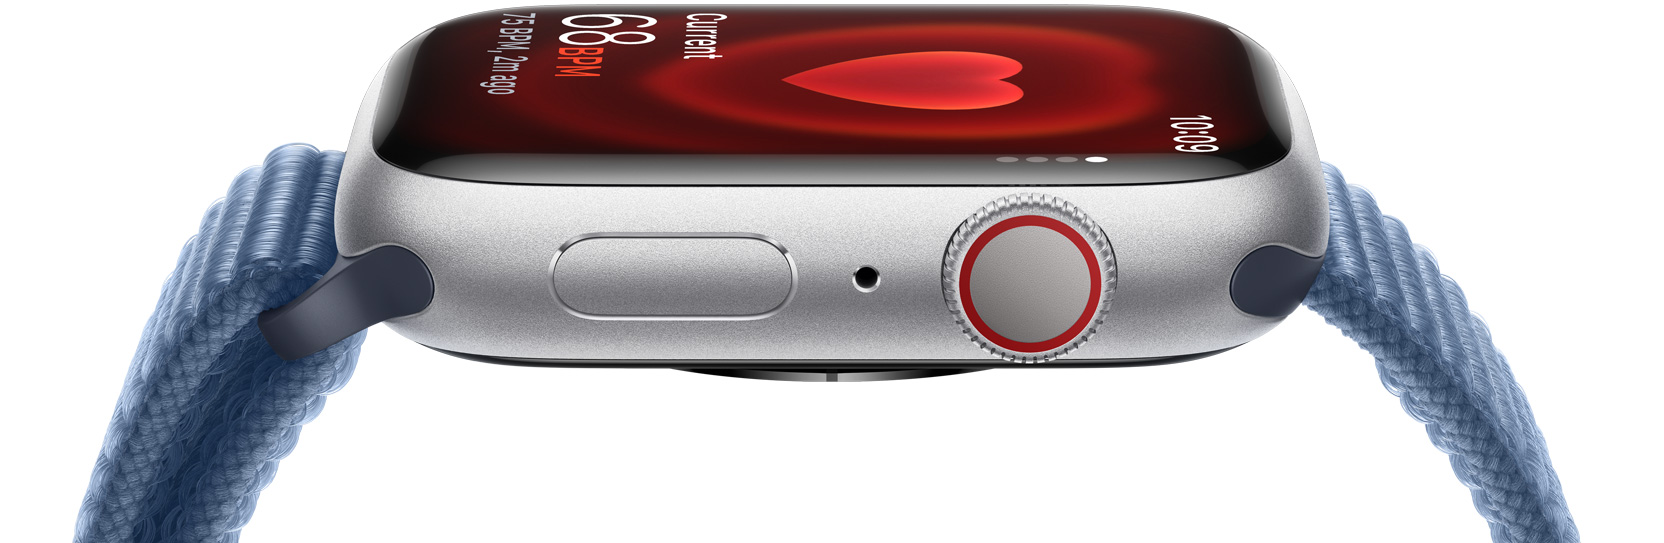 Страничен изглед на Apple Watch, който показва сърдечната честота на човек.